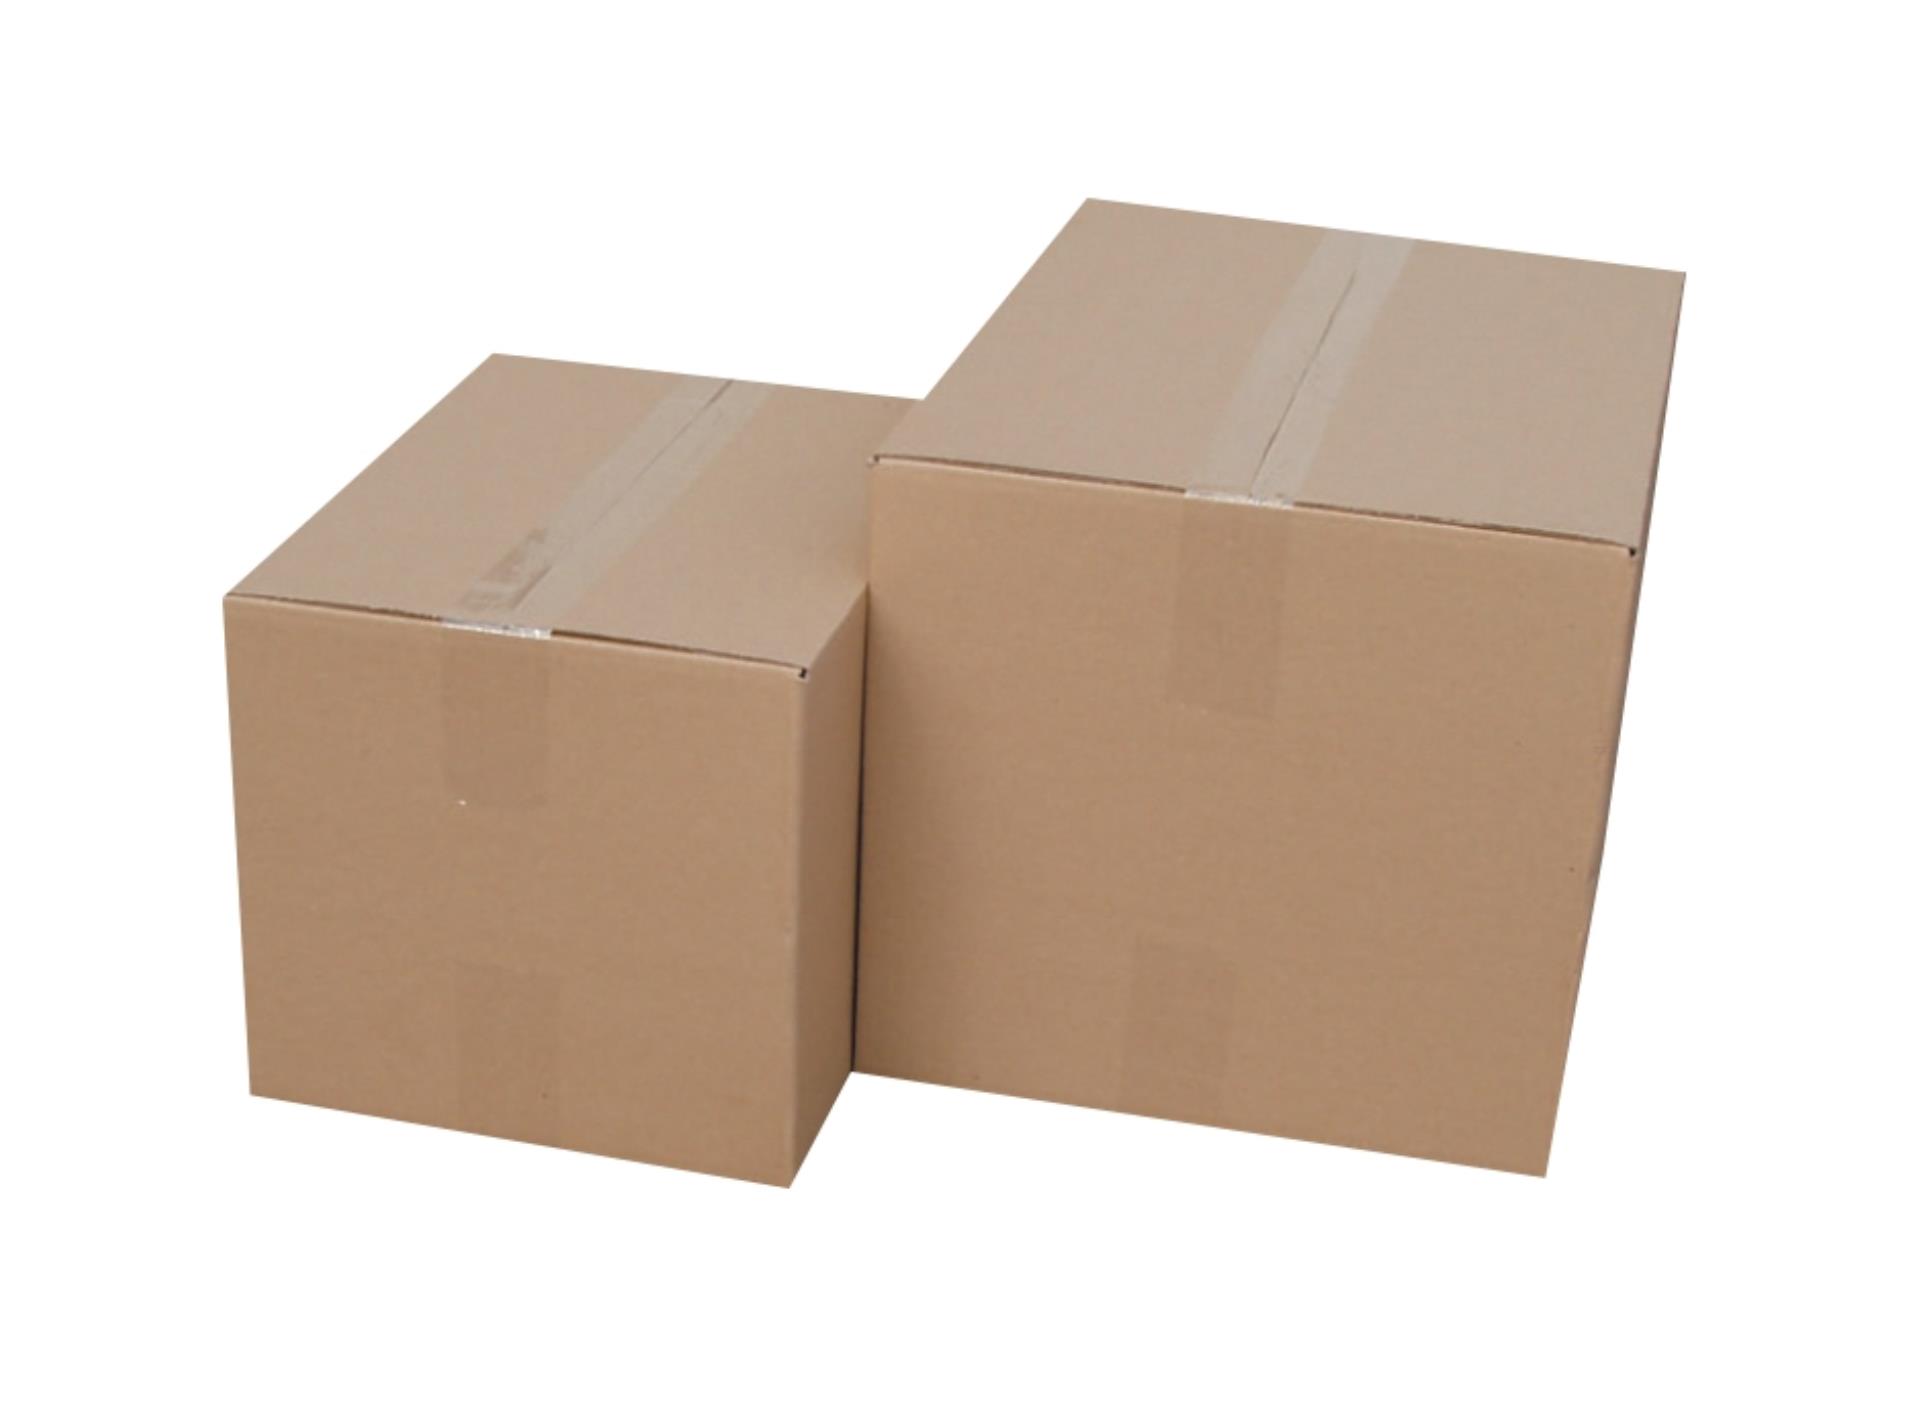 Krabice kartonové 5vrstvé - skladovací, 79 x 38,5 x 37,5 cm, 45 kg